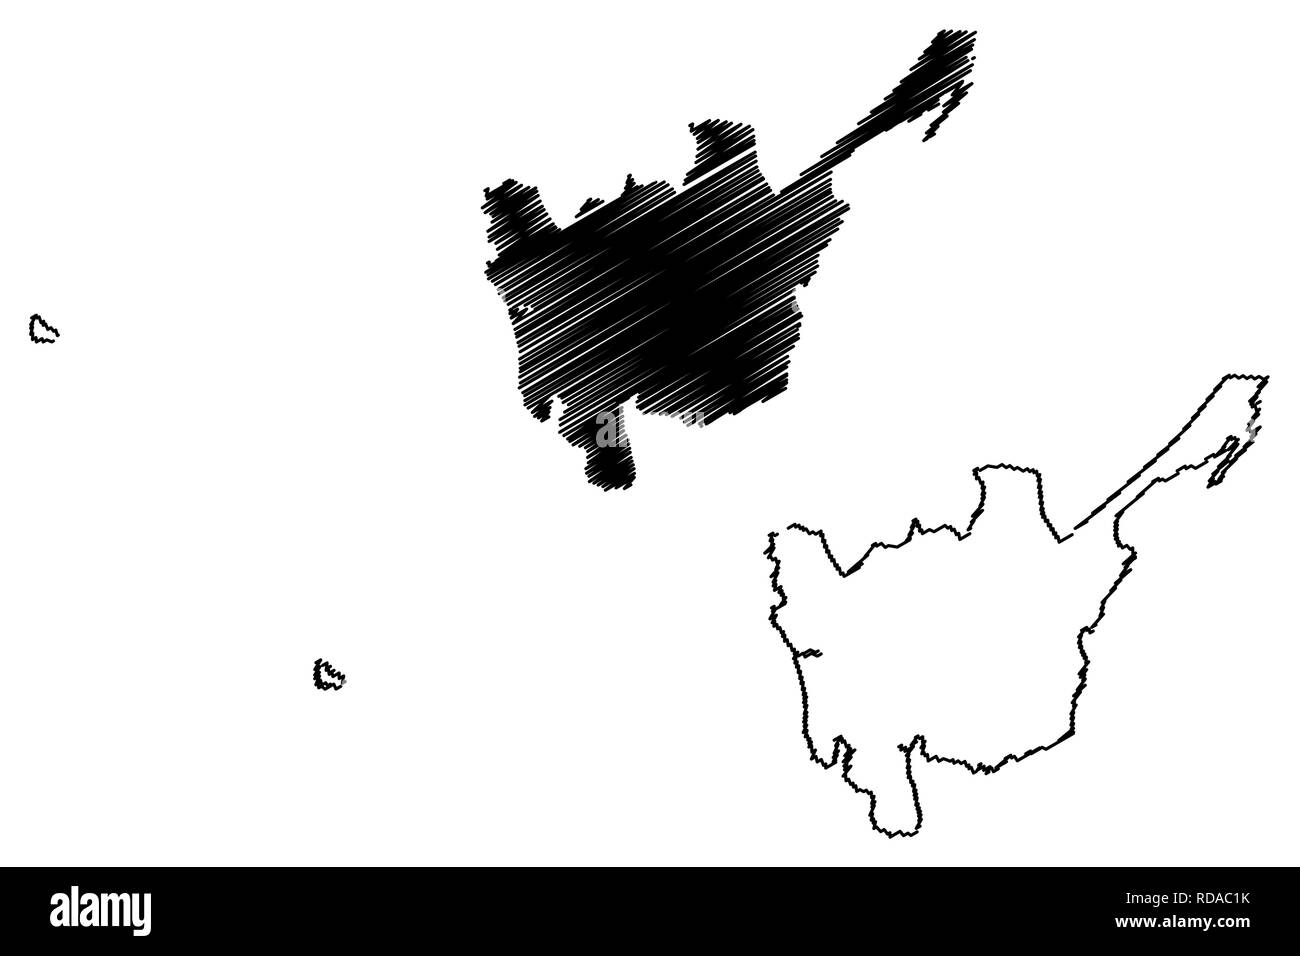 Central Luzon (Regionen und Provinzen der Philippinen, die Republik der Philippinen) Karte Vektor-illustration, kritzeln Skizze Region III Karte Stock Vektor